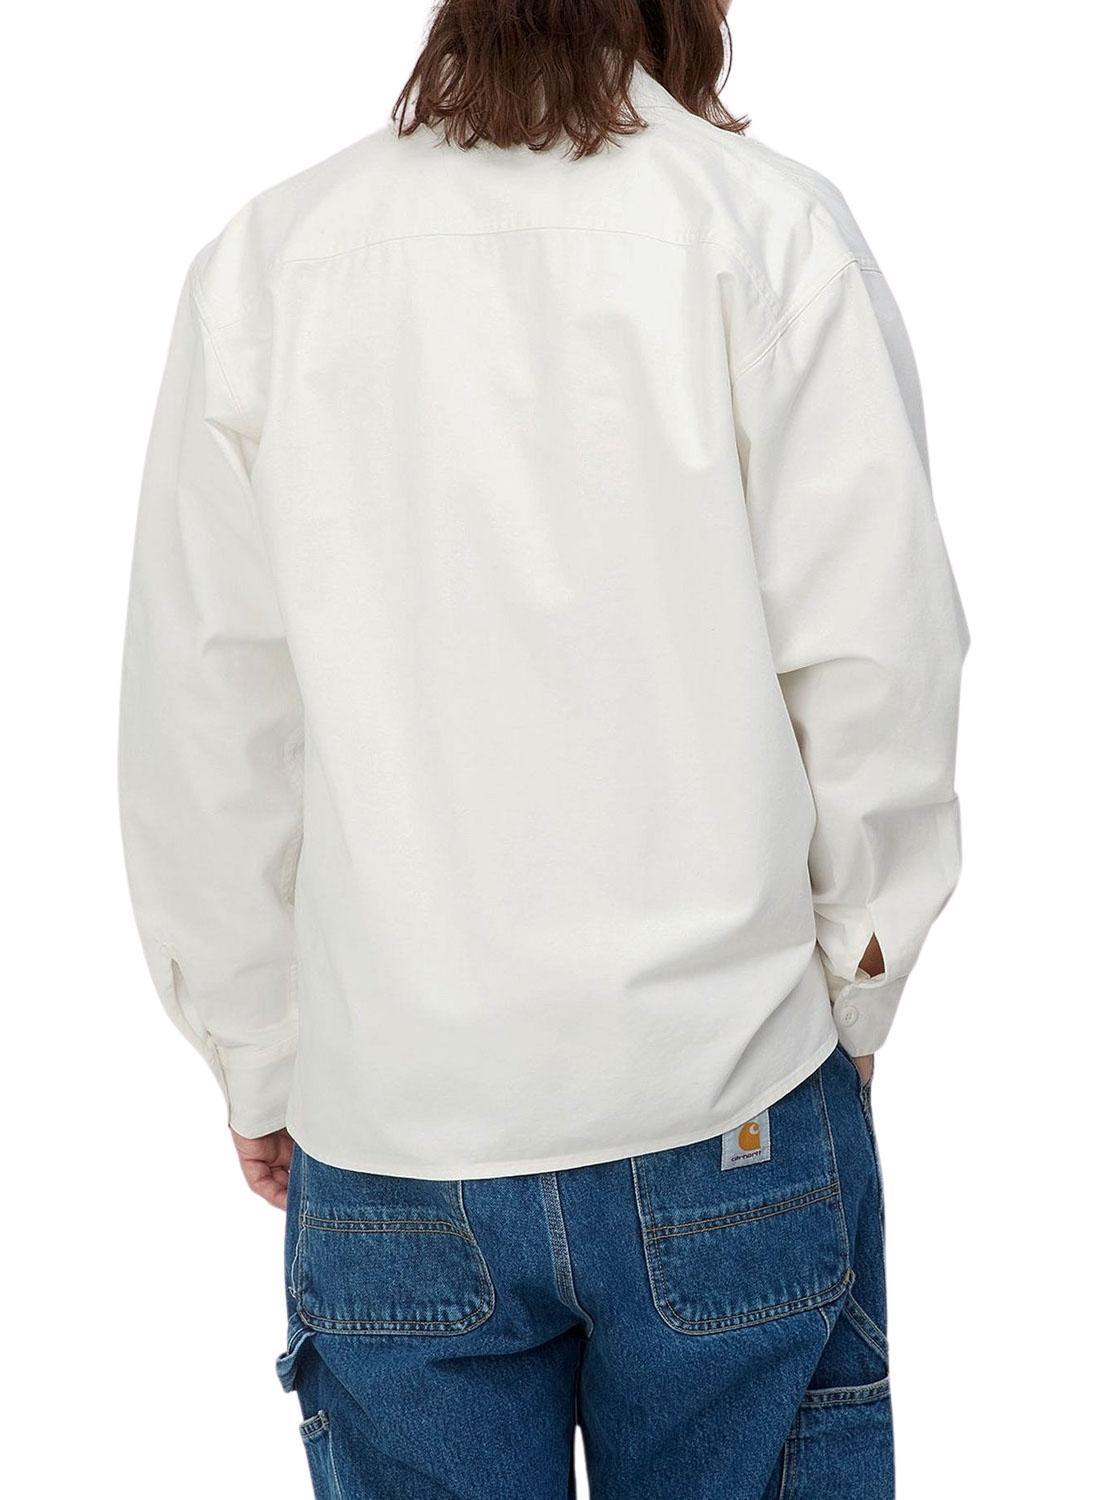 Overshirt Carhartt Reno Bianco per Uomo